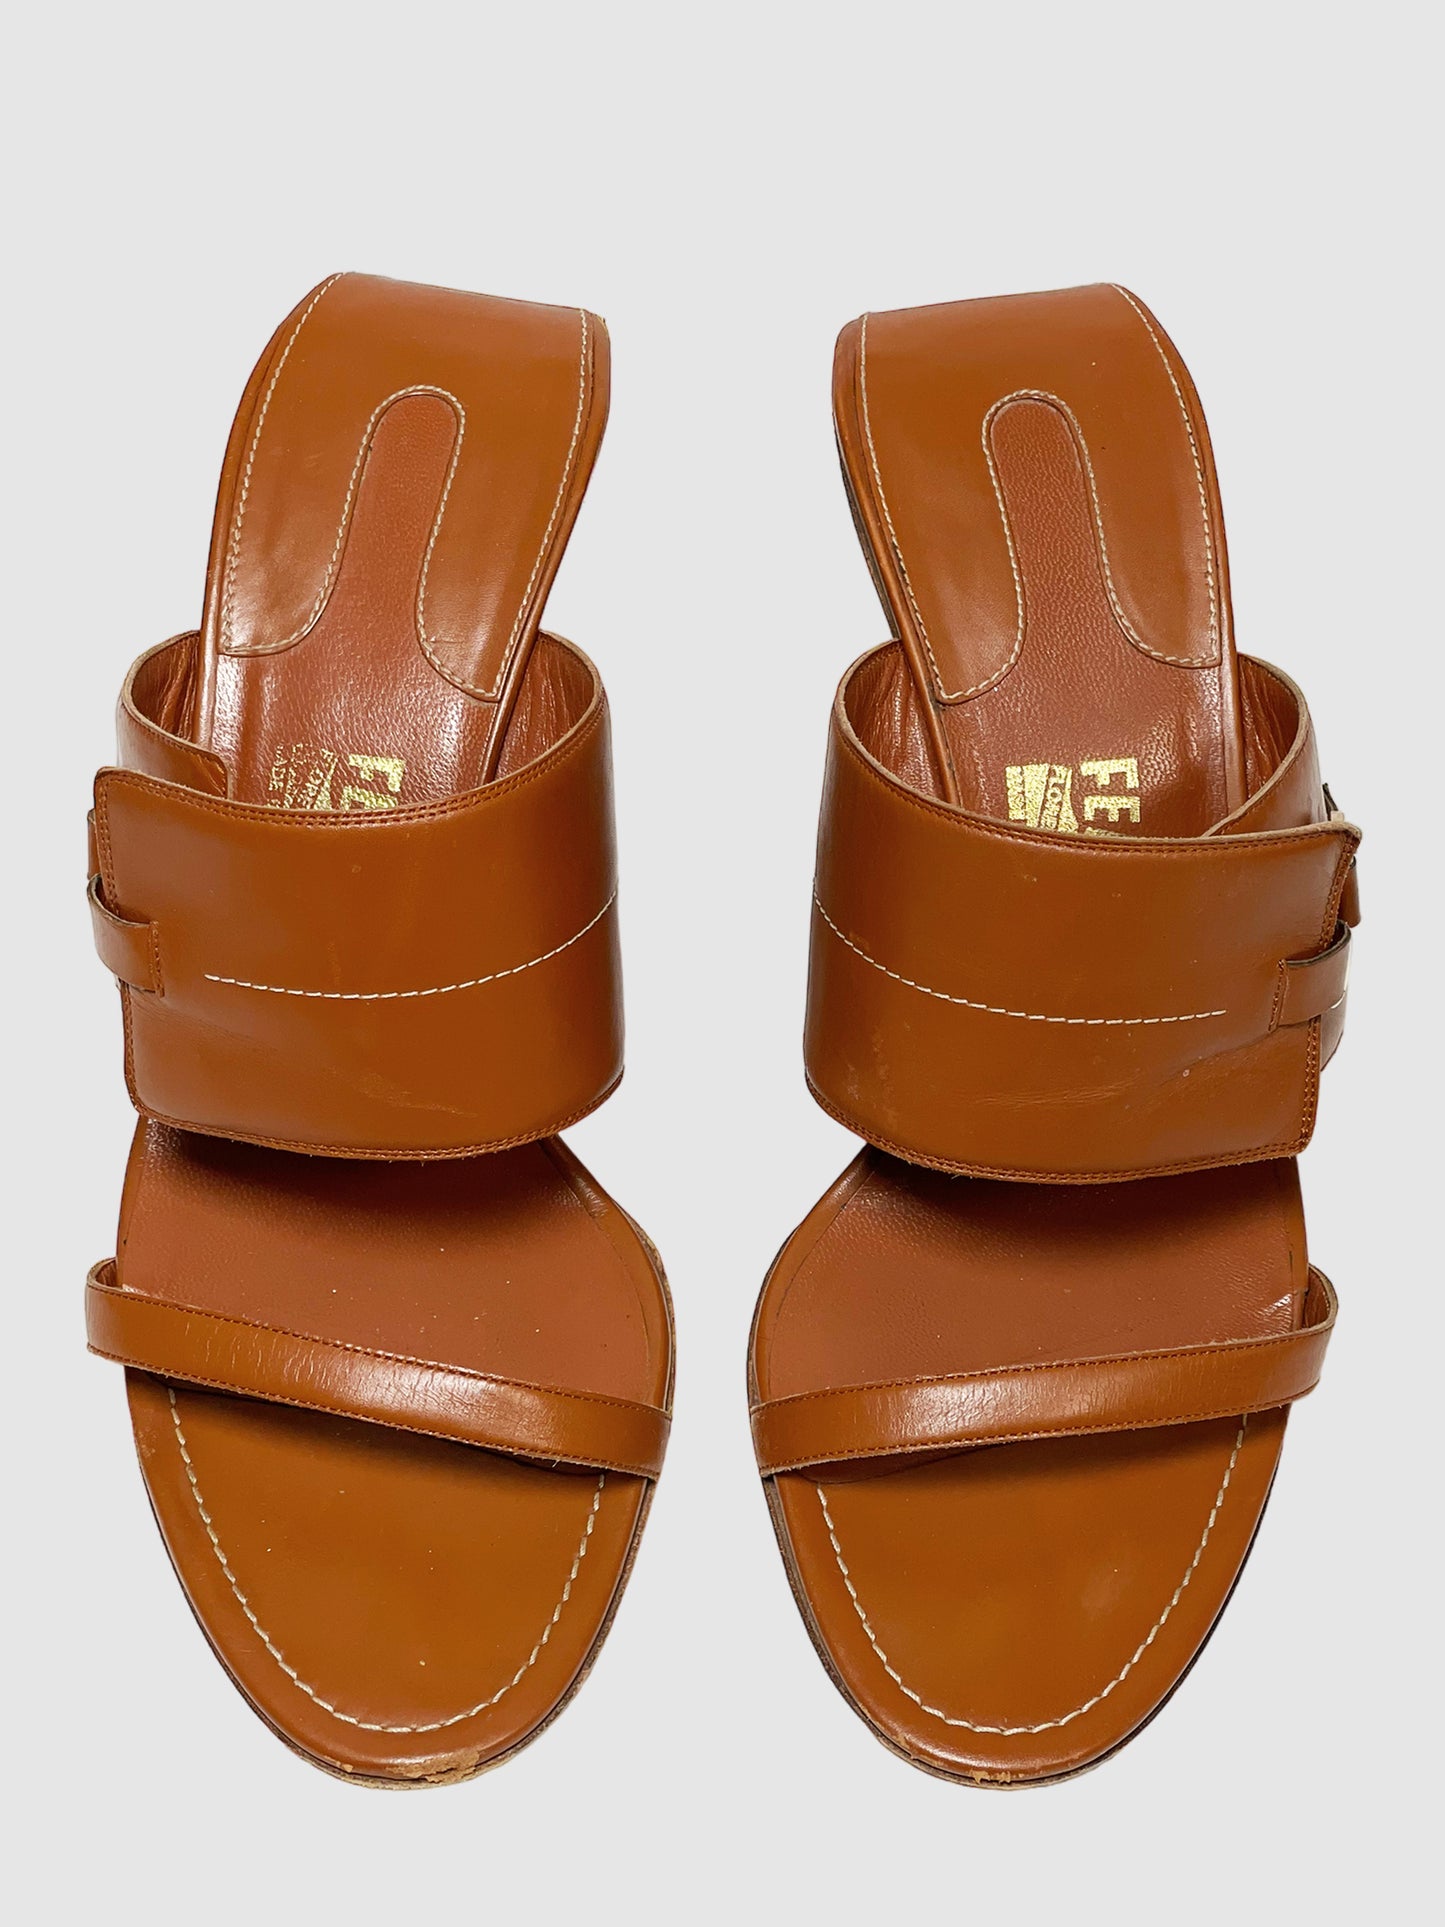 Salvatore Ferragamo Leather Slides - Size 9